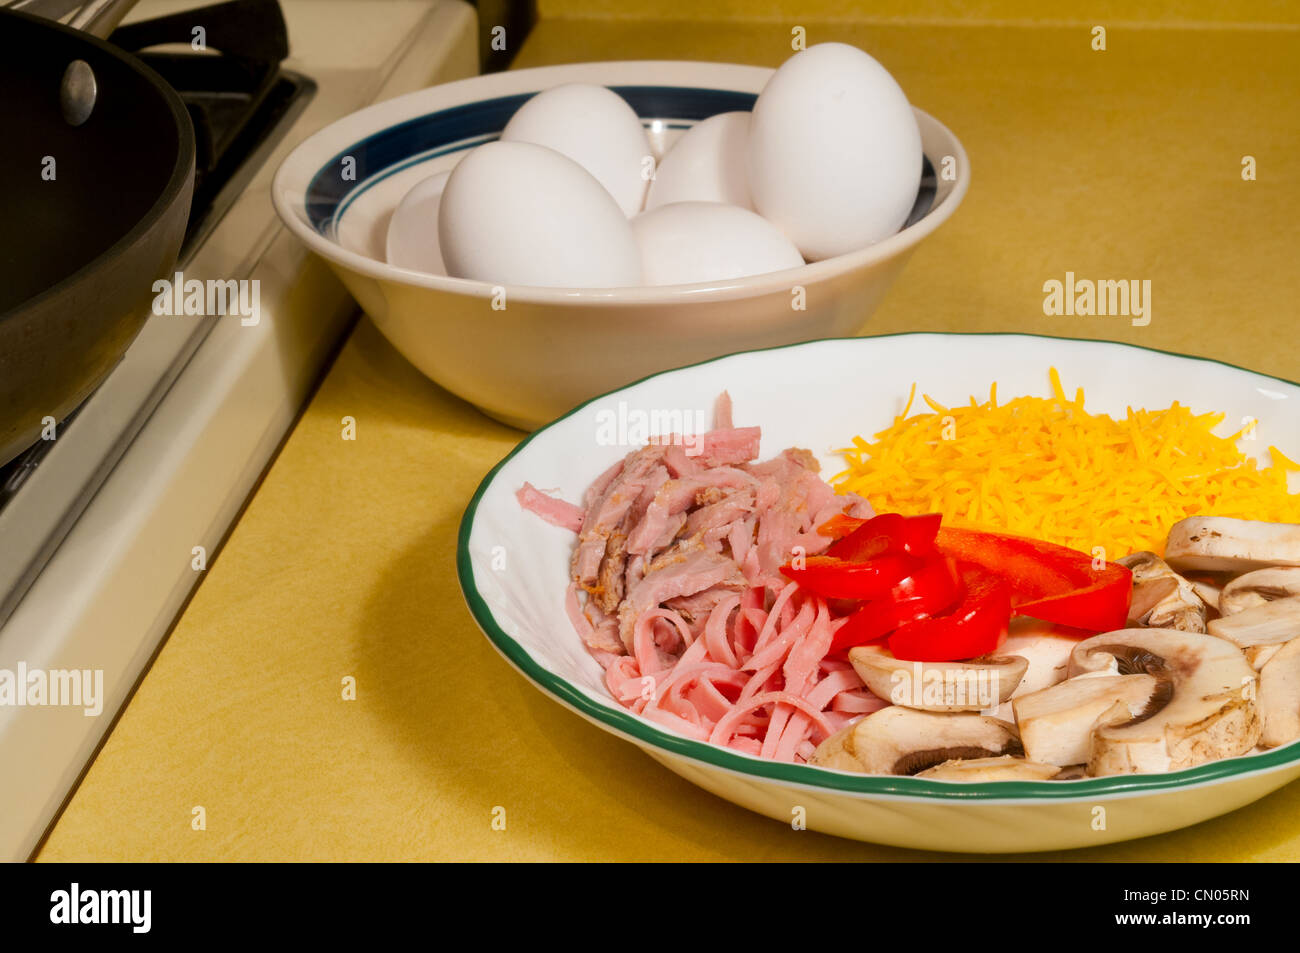 Ingrédients pour faire une omelette : œufs, fromage, jambon, champignons, des tranches de poivrons Banque D'Images